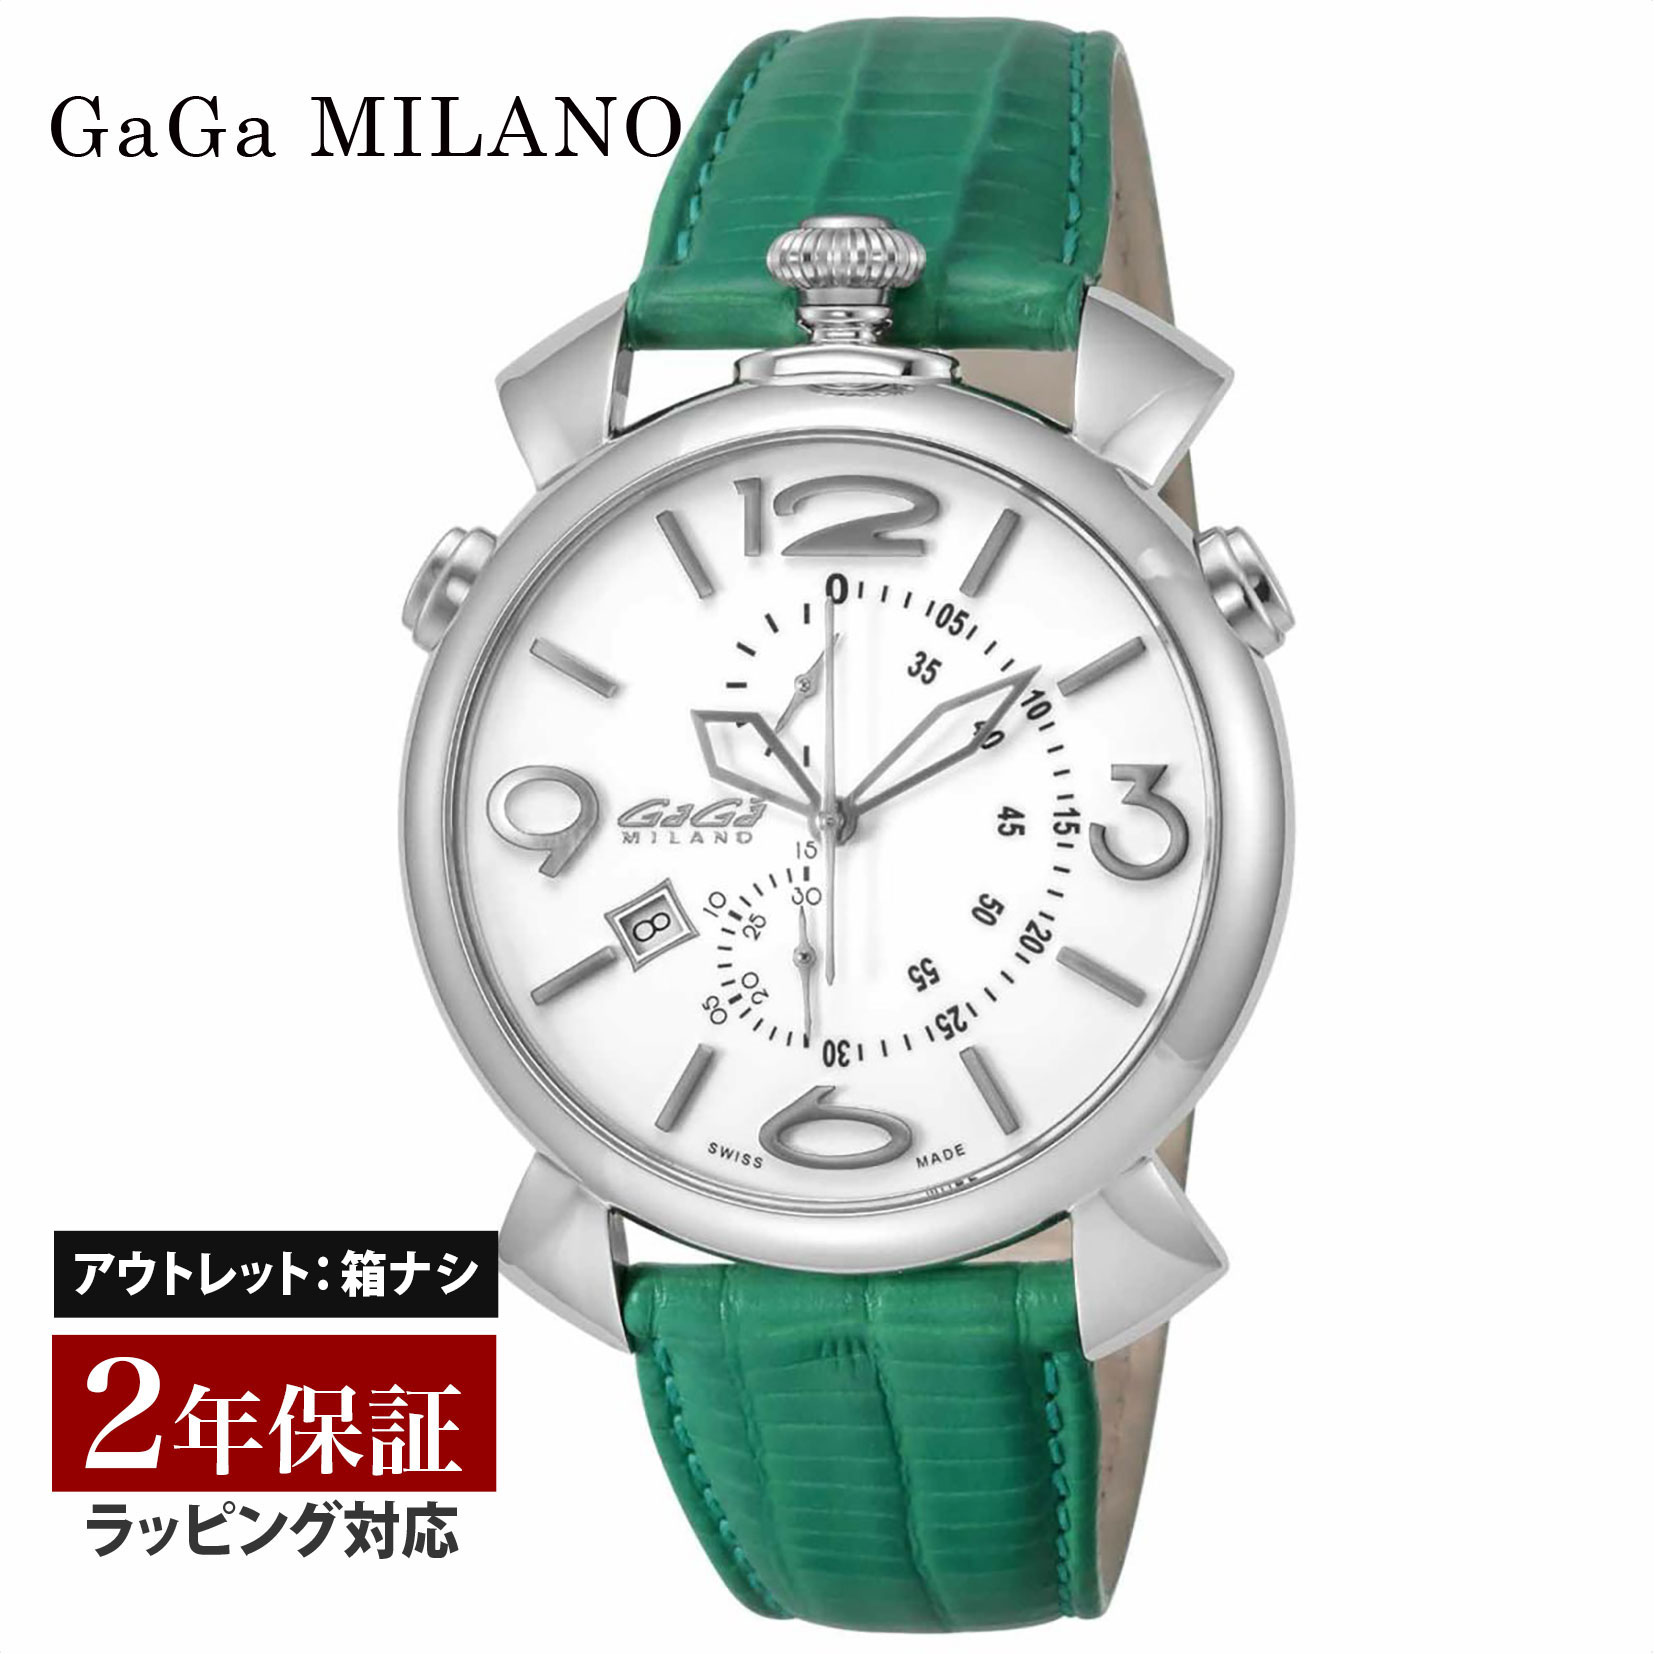 【クリアランスSALE】 GaGaMILAN ガガミラノ THINCHRONO46MM クォーツ メンズ ホワイト 5097.02SG-N 腕時計 高級腕時計 ブランド 